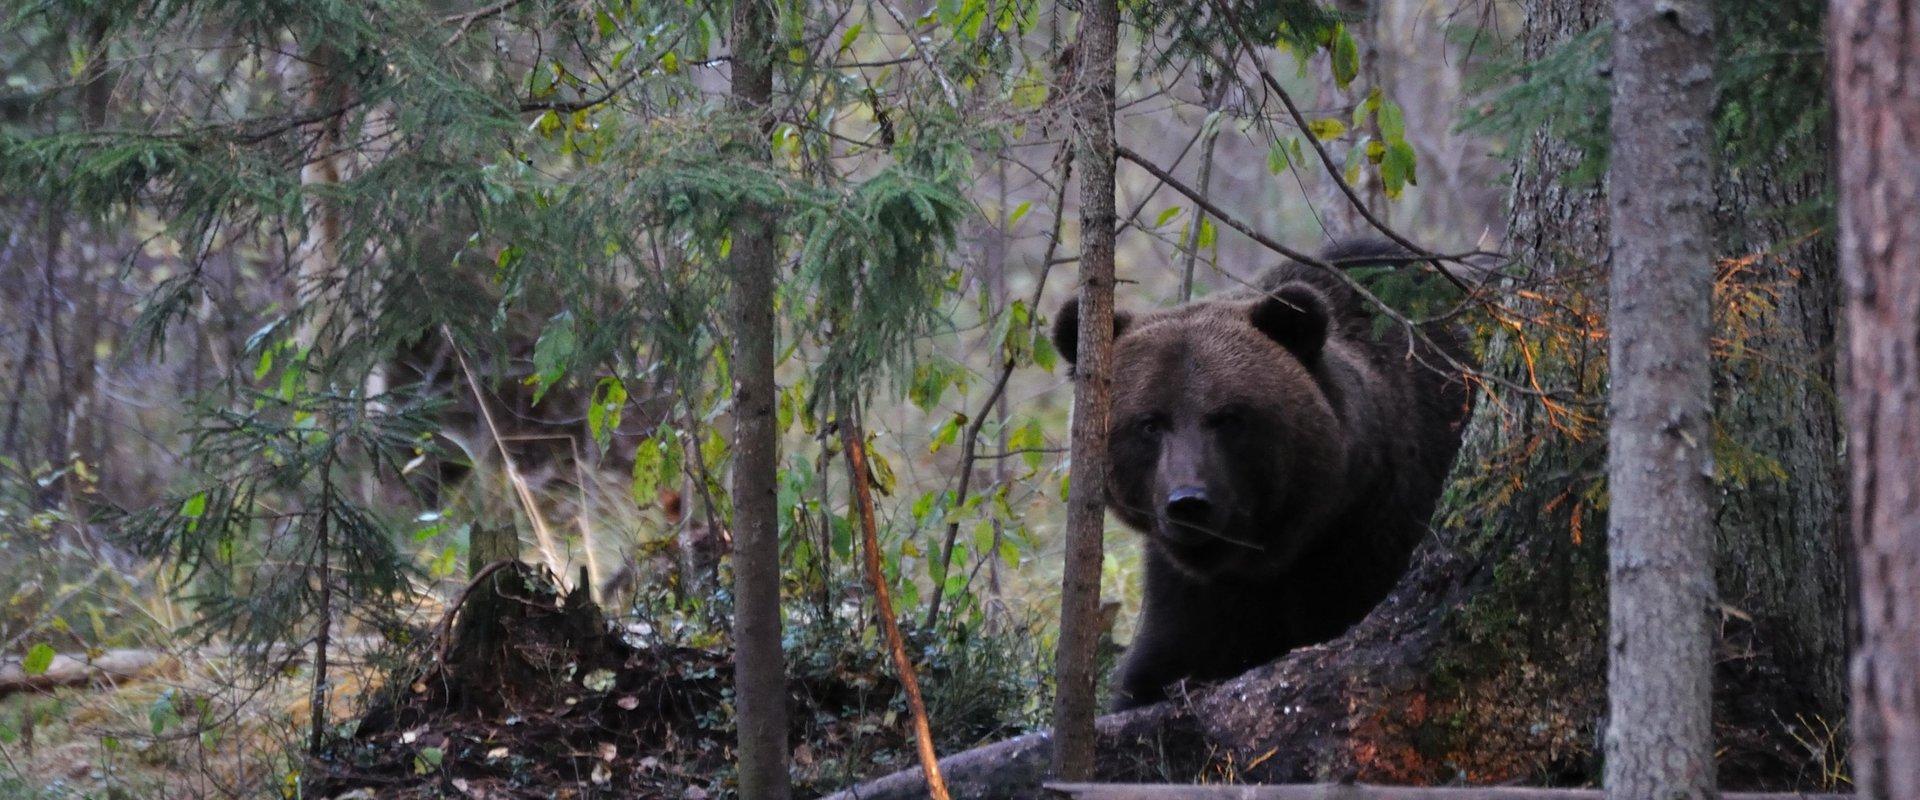 In der Bärenhütte in Alutaguse besteht eine gute Möglichkeit, einen Bären zu sehen. Die Hütte verfügt über zwei Fotoluken auf beiden Seiten und sie li